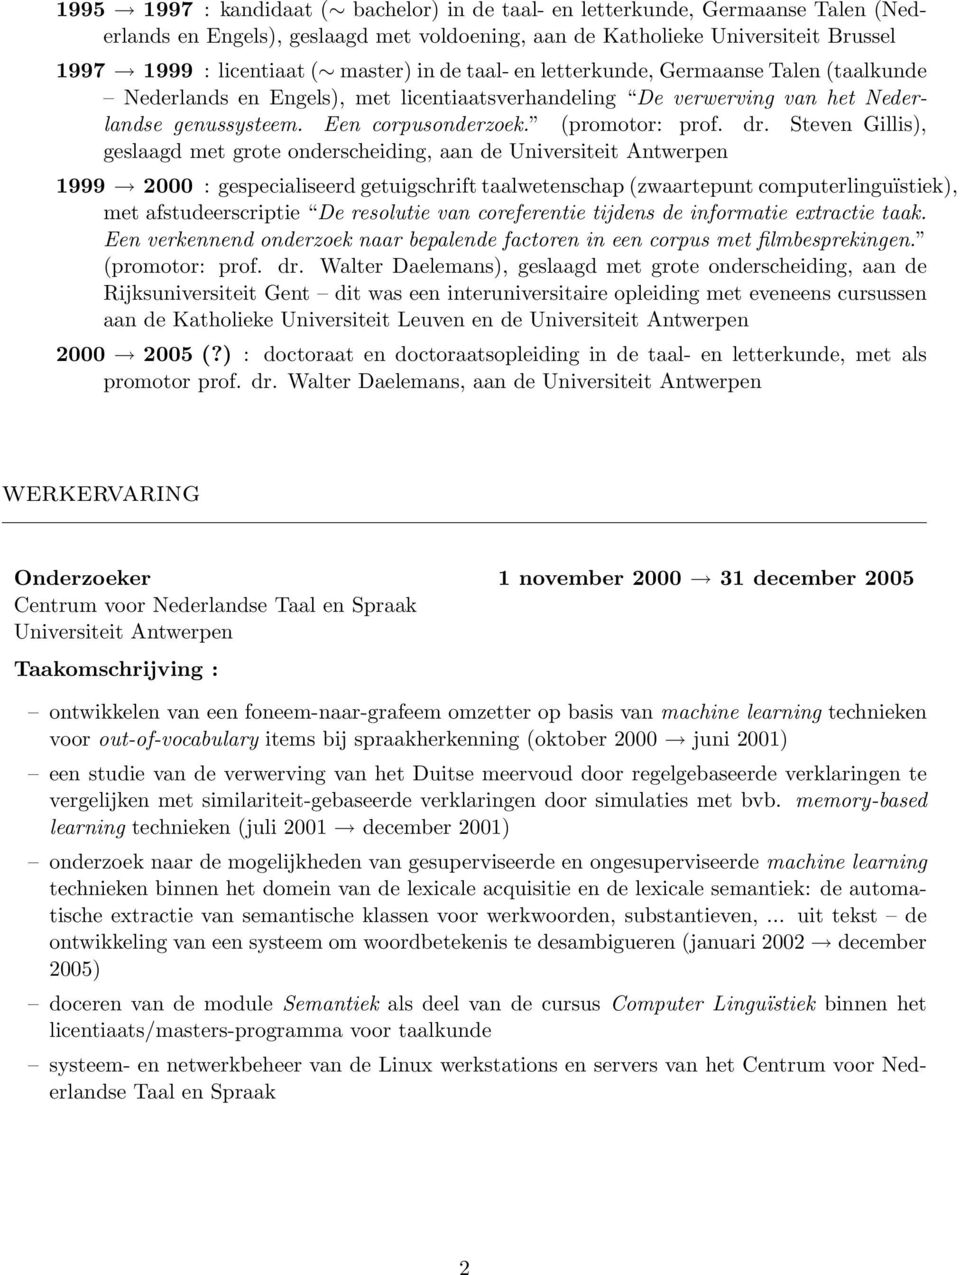 Steven Gillis), geslaagd met grote onderscheiding, aan de Universiteit Antwerpen 1999 2000 : gespecialiseerd getuigschrift taalwetenschap (zwaartepunt computerlinguïstiek), met afstudeerscriptie De